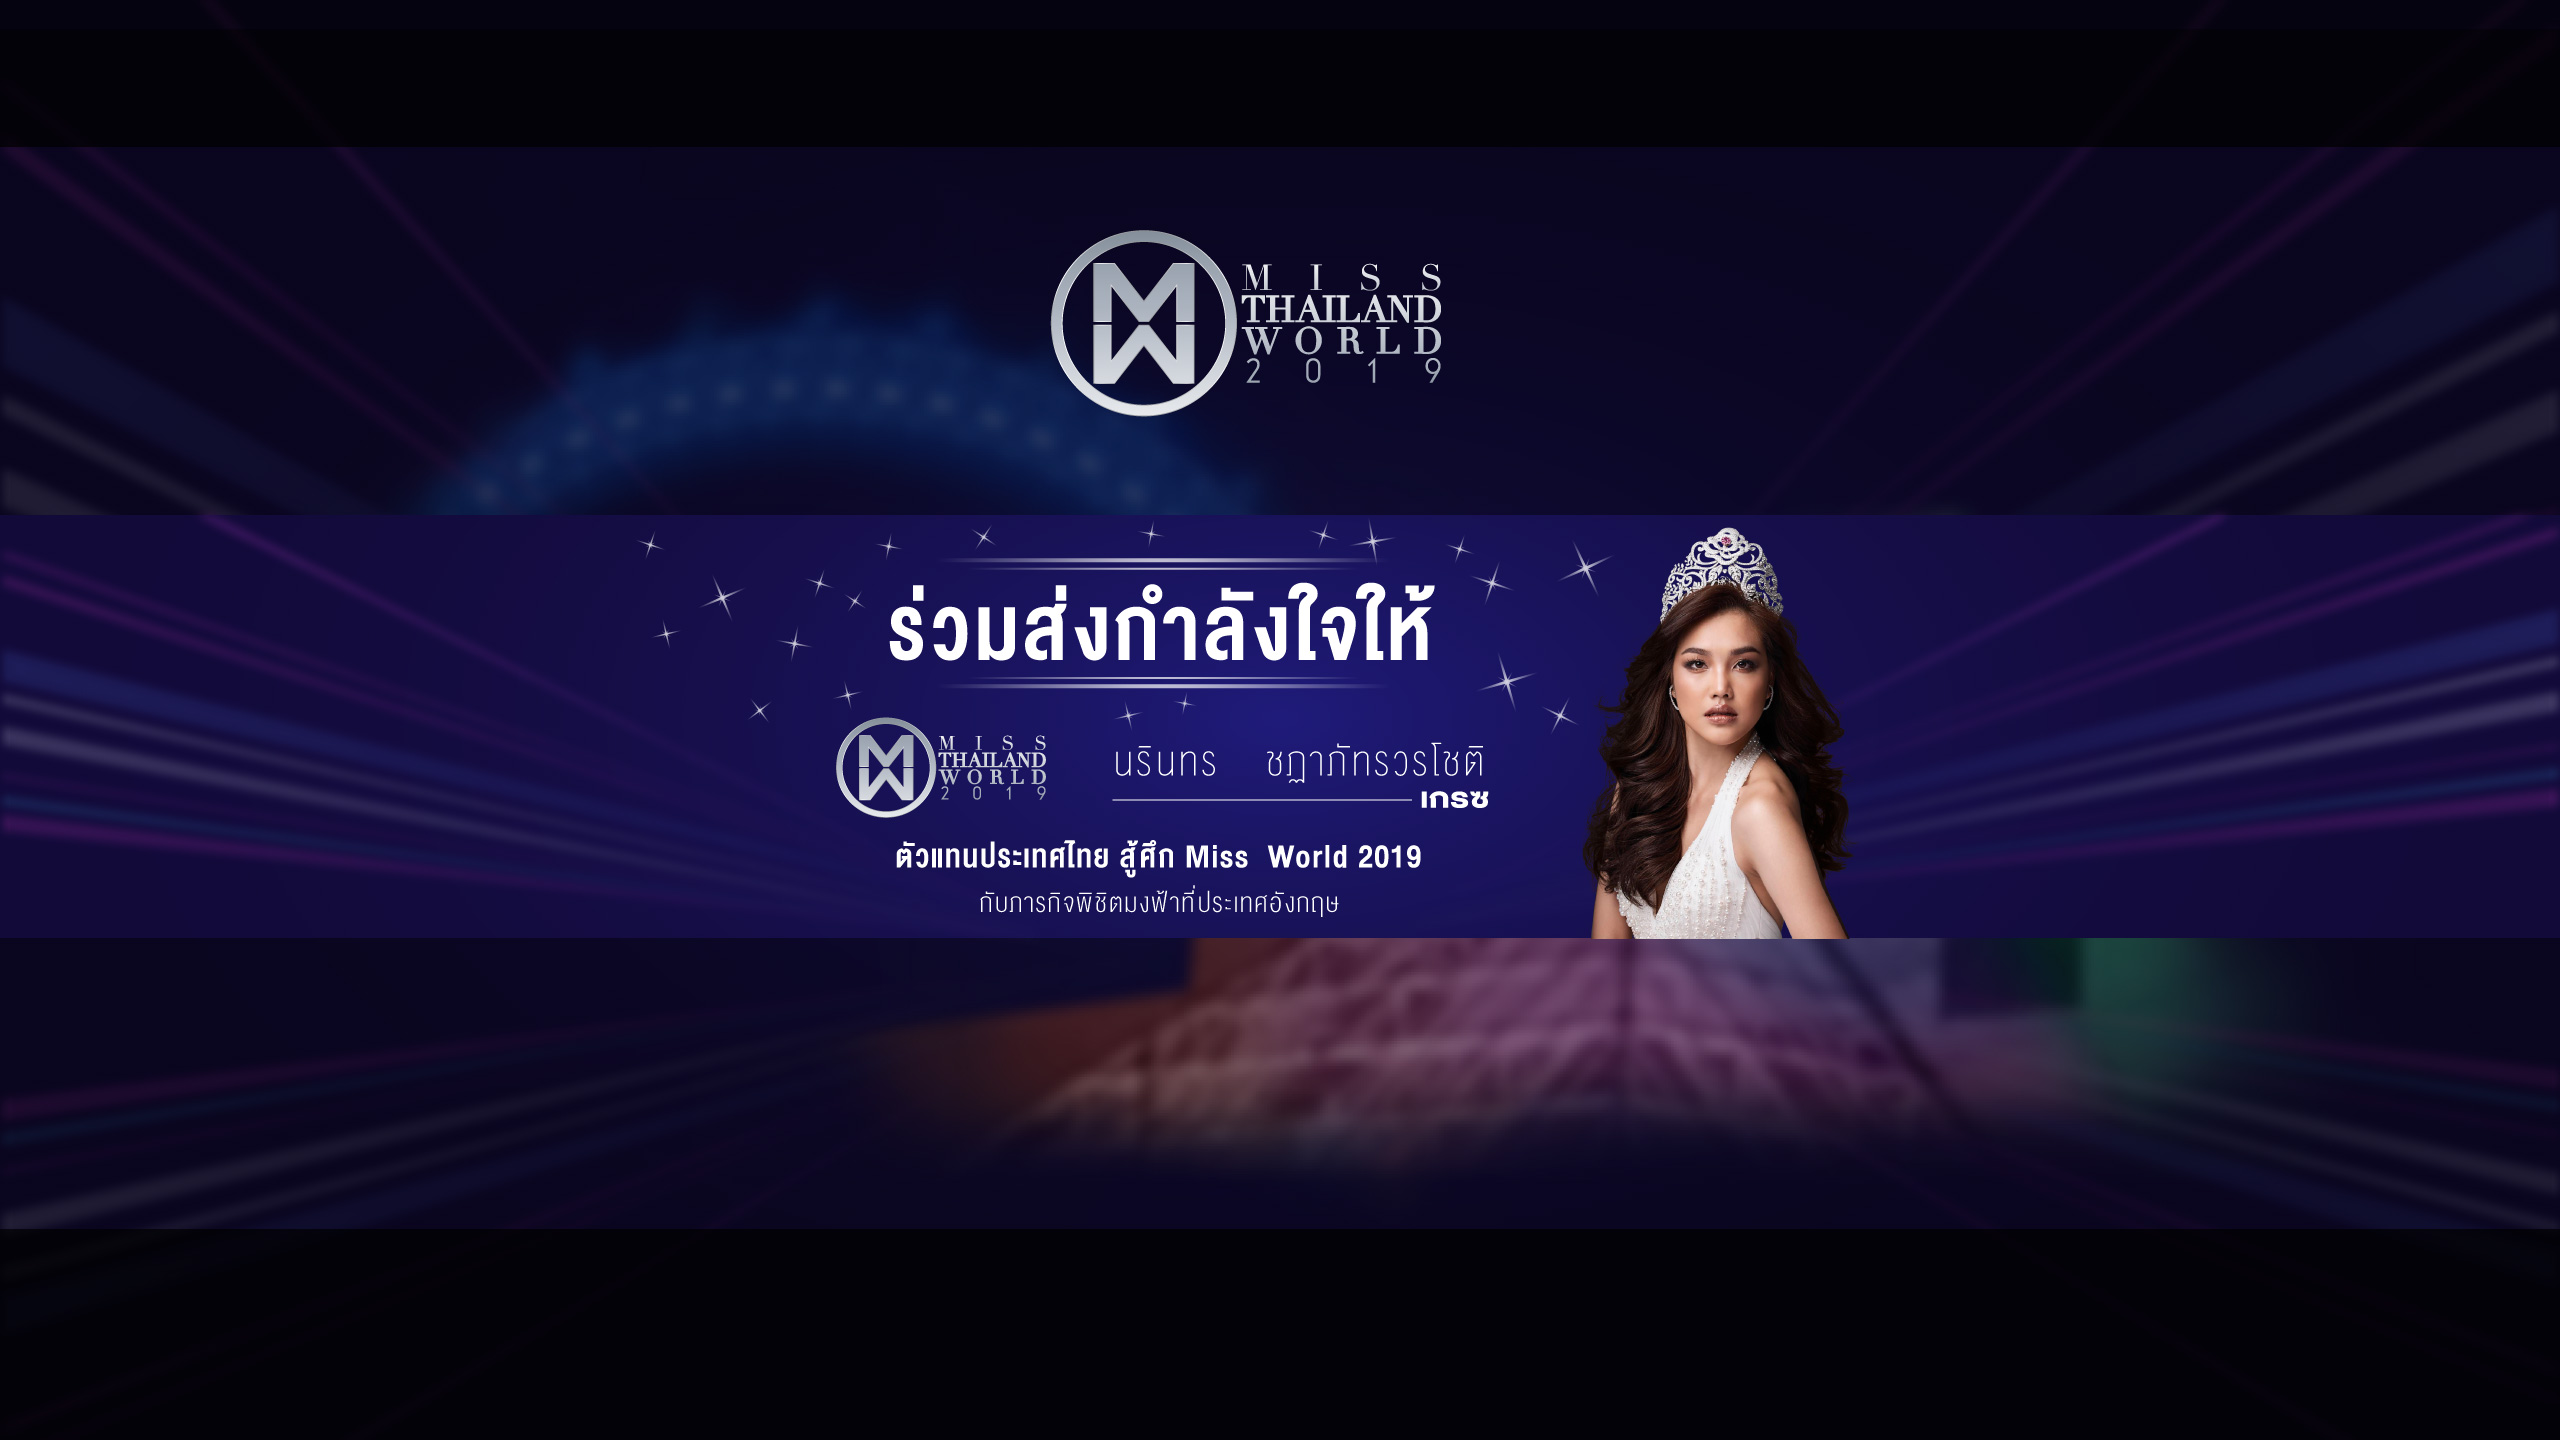 ขอแรงเชียร์ชาวไทย โหวตให้ “เกรซ-นรินทร” ลุ้น มงฟ้า สู้ศึกเวที Miss World 2019